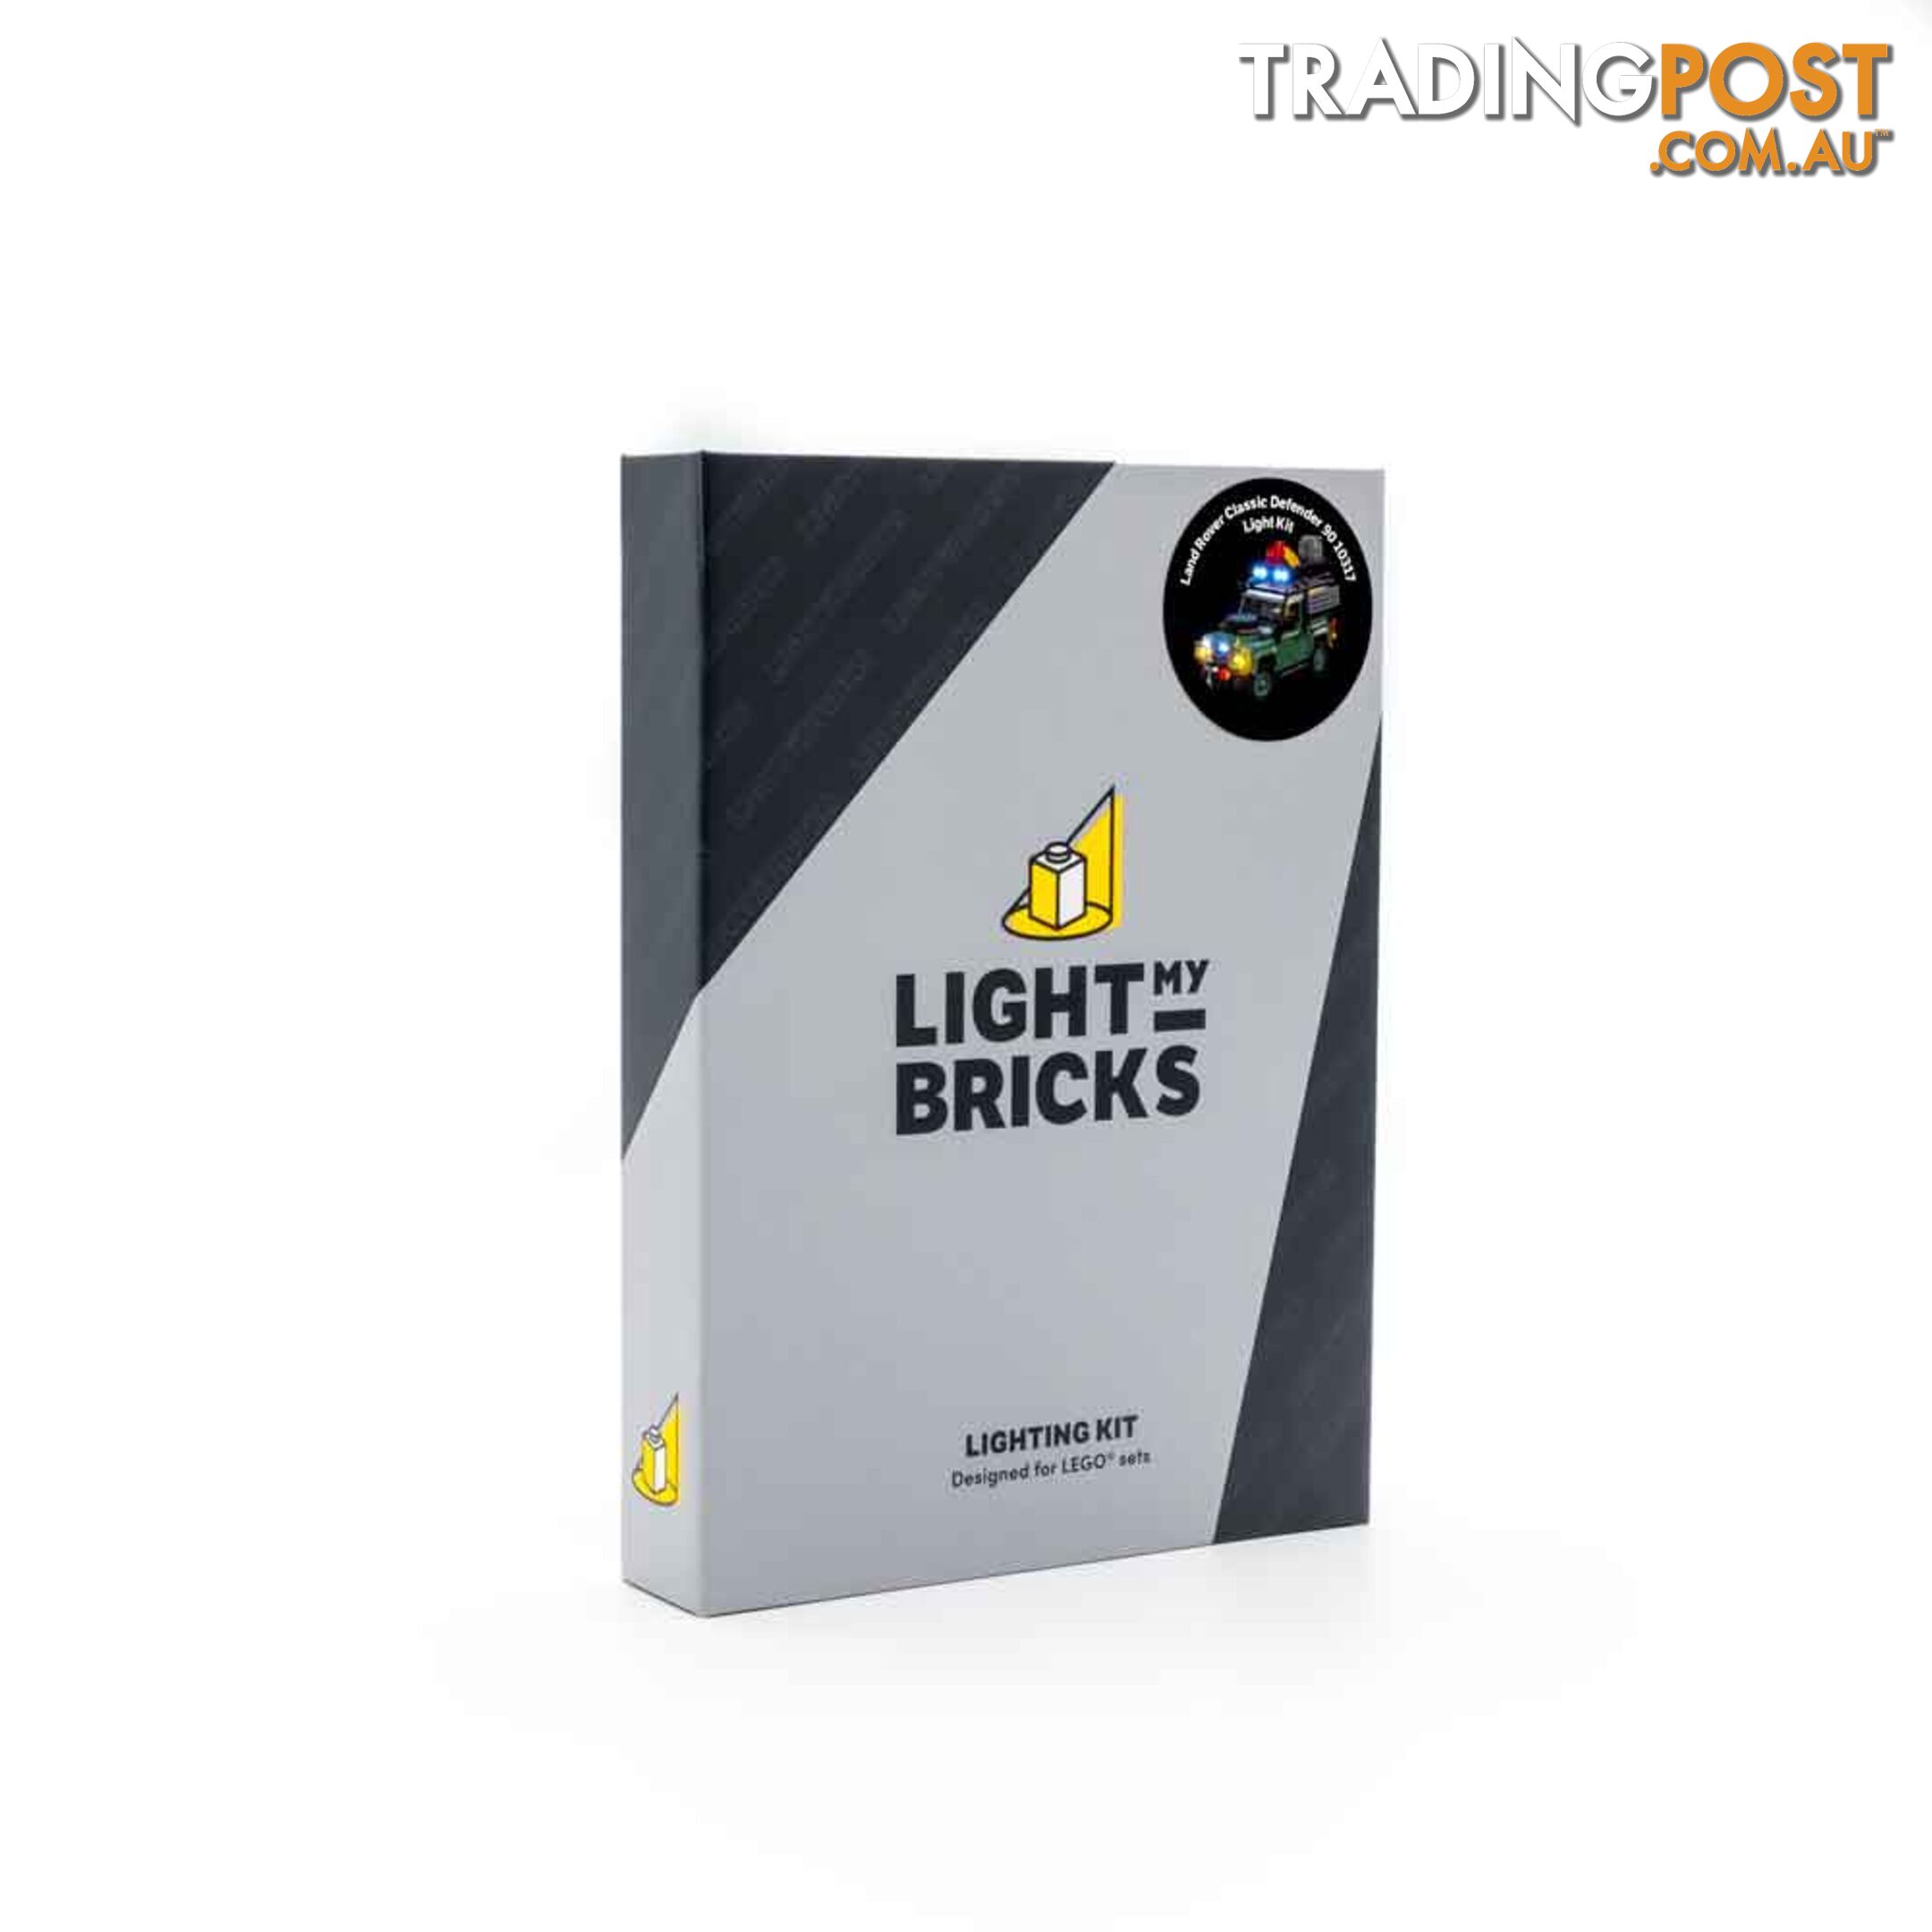 Light Kit For LEGO Land Rover Classic Defender 90 10317 - Light My Bricks - Lb72668409506 - 726684095063